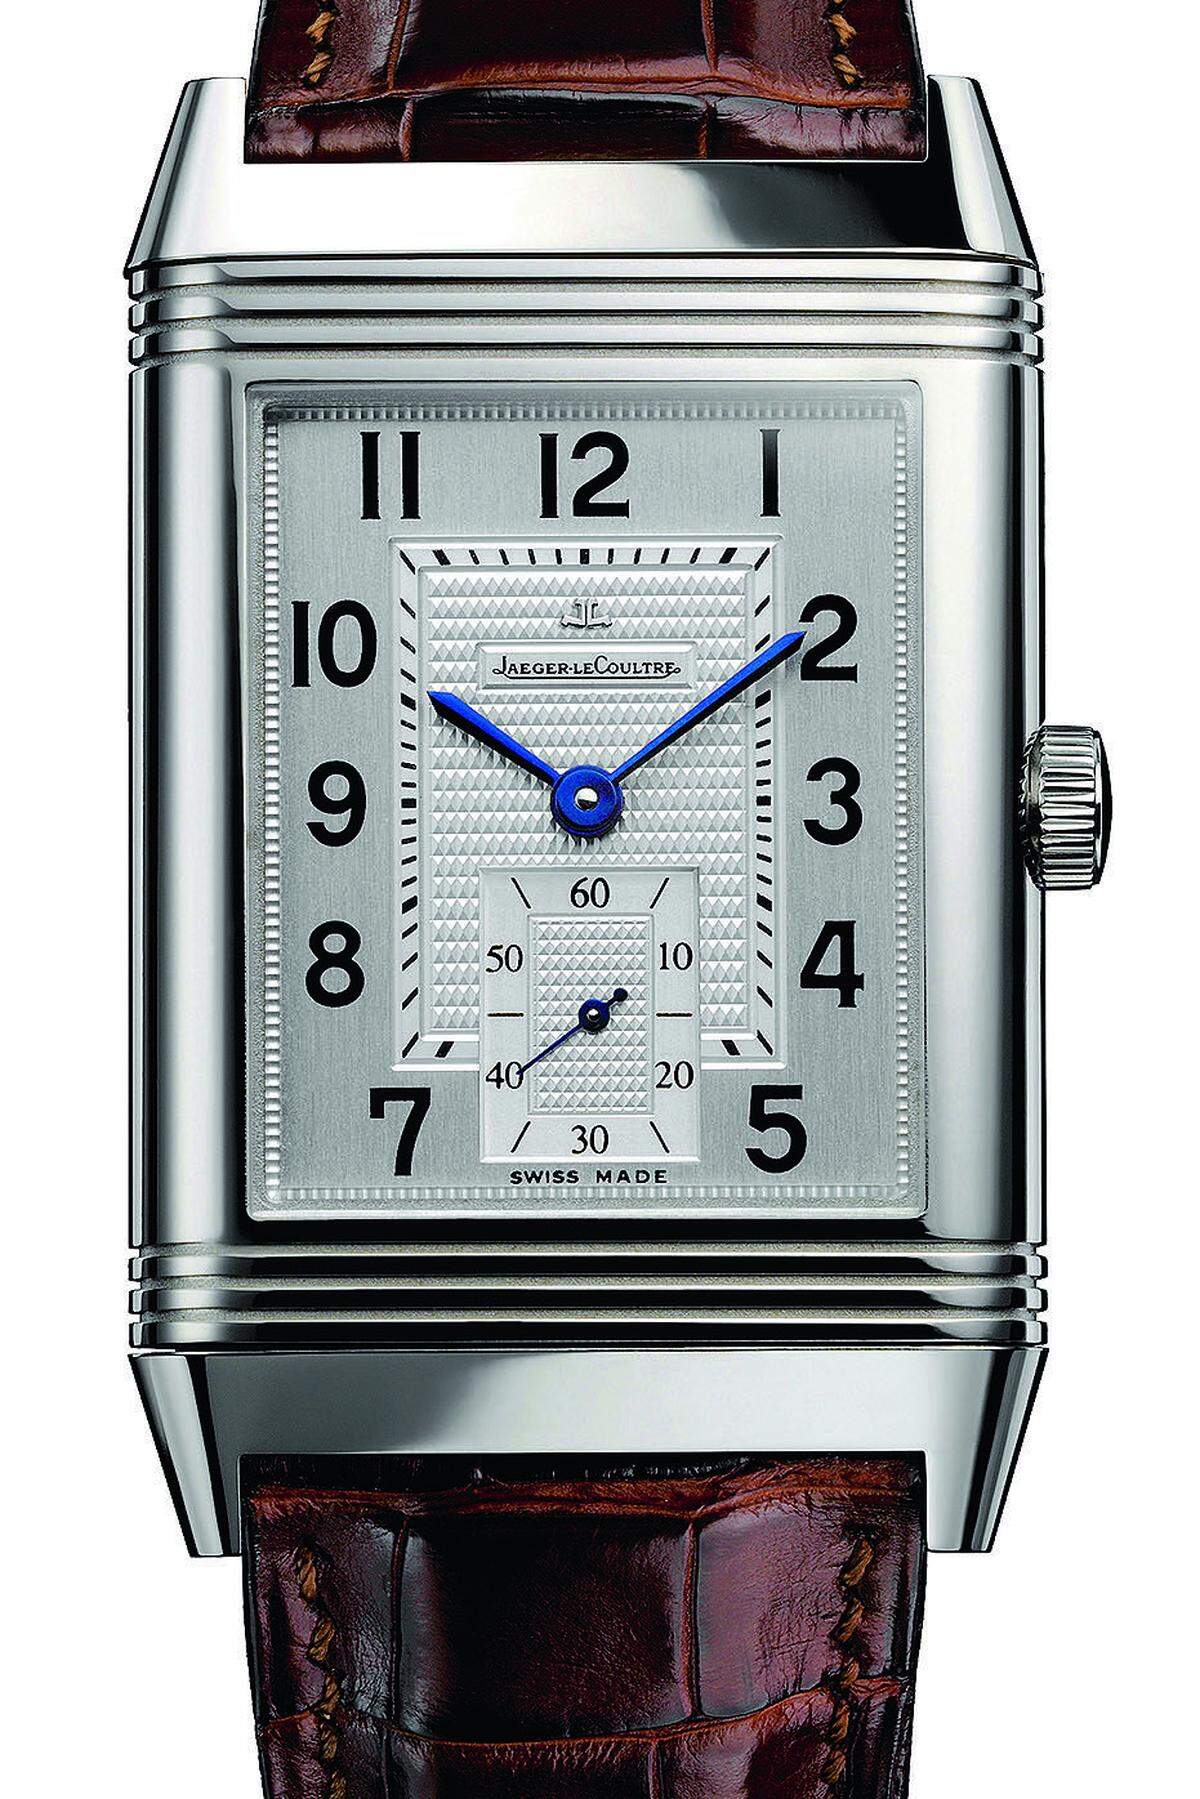 Mit ihrem Wendegehäuse ist die Reverso die erfolgreichste und begehrteste nicht runde Armbanduhr der Welt. Seit 1931 wird sie optisch fast unverändert gebaut, mit jedem Jahr attraktiver und in immer mehr unterschiedlichen Varianten angeboten. Gutes Design stirbt nie!